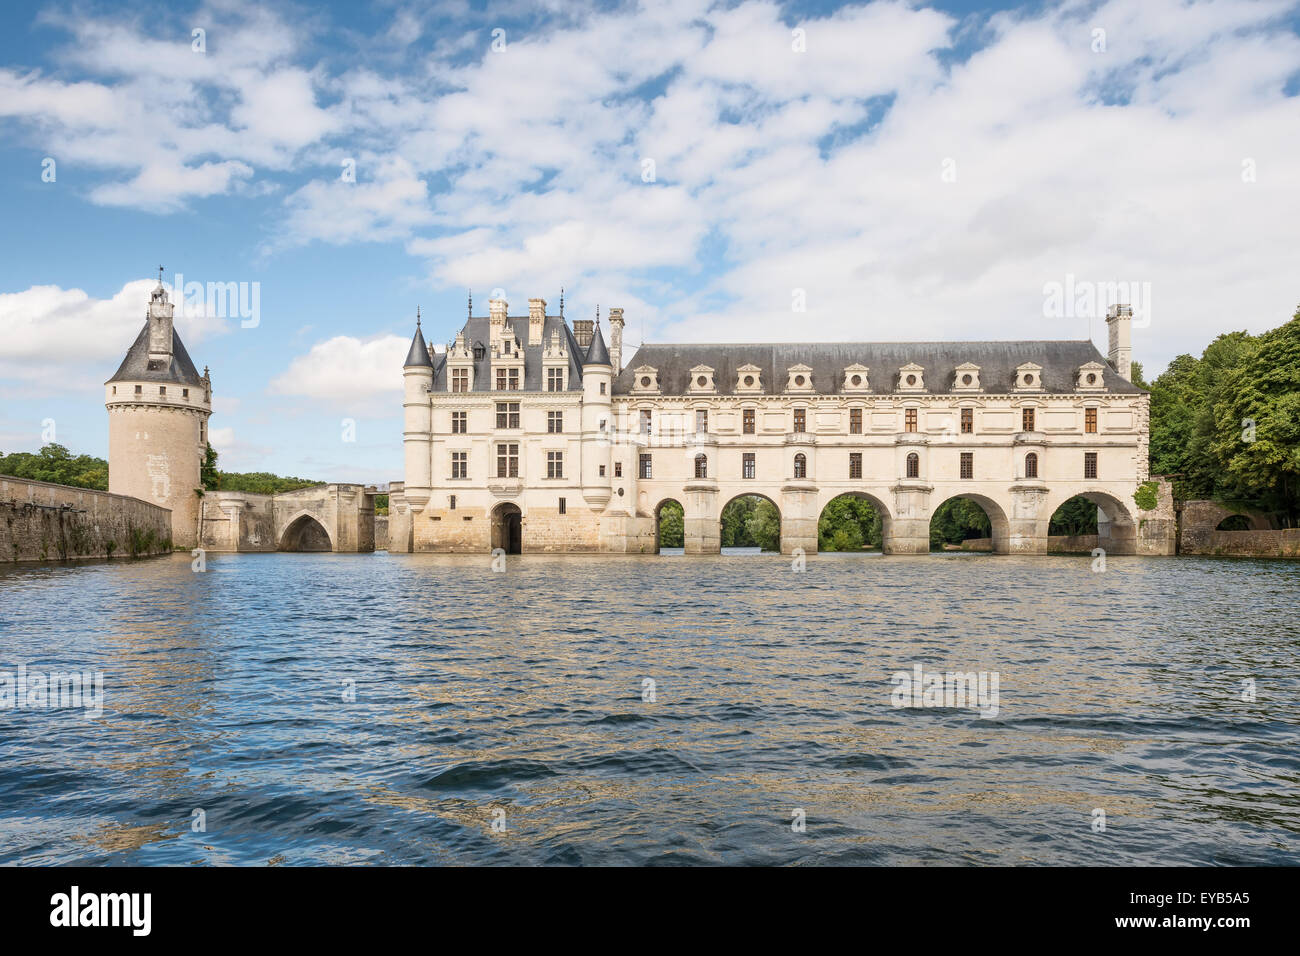 Château de Chenonceau, construit sur le Cher , vallée de la Loire,France, vue de la rivière, sur fond de ciel bleu cloudu. Banque D'Images